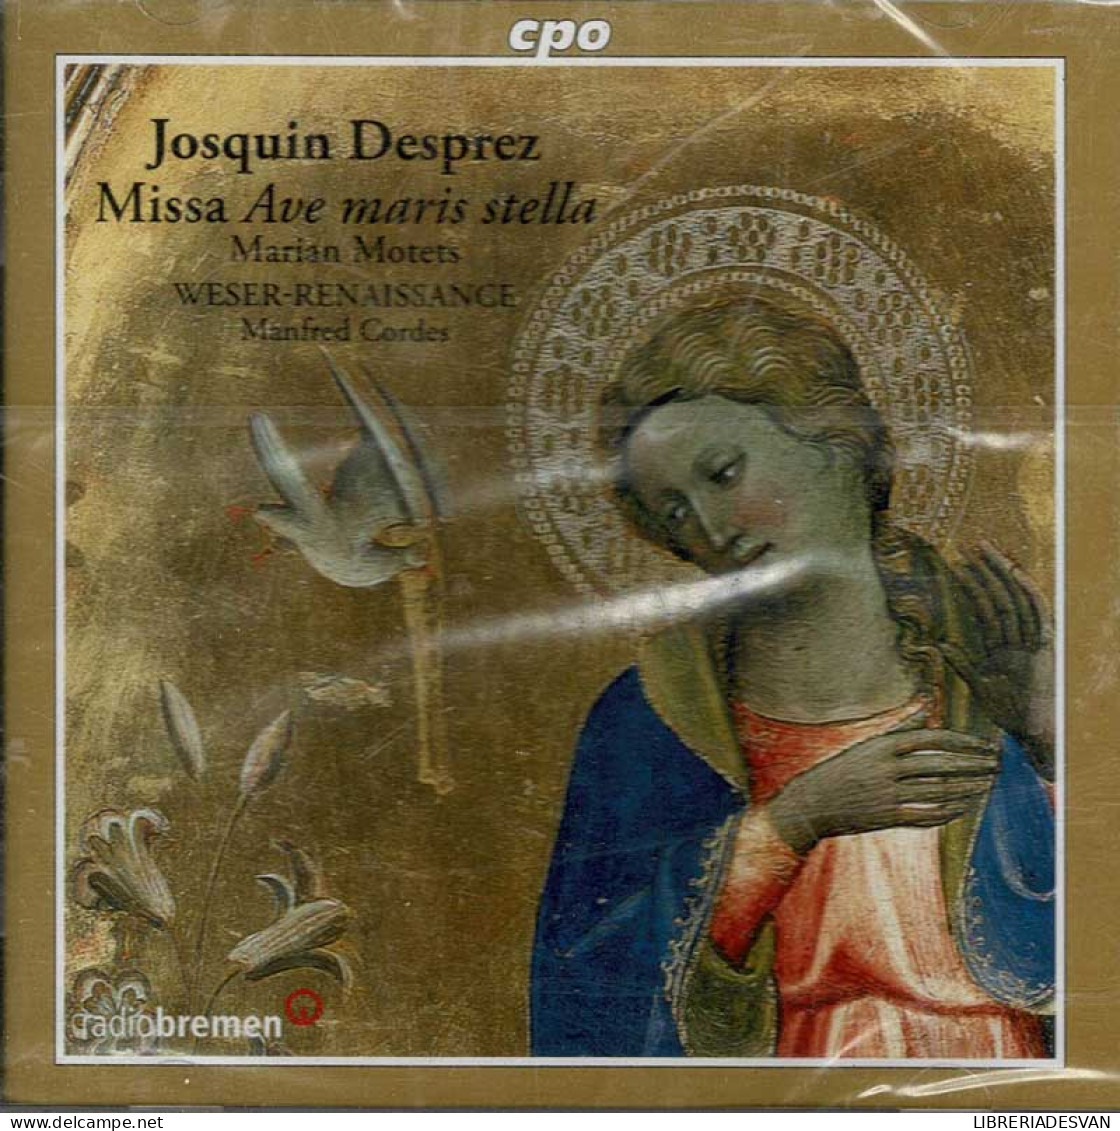 Josquin Des Prés, Weser-Renaissance, Manfred Cordes - Missa Ave Maris Stella / Marian Motets. CD - Klassik